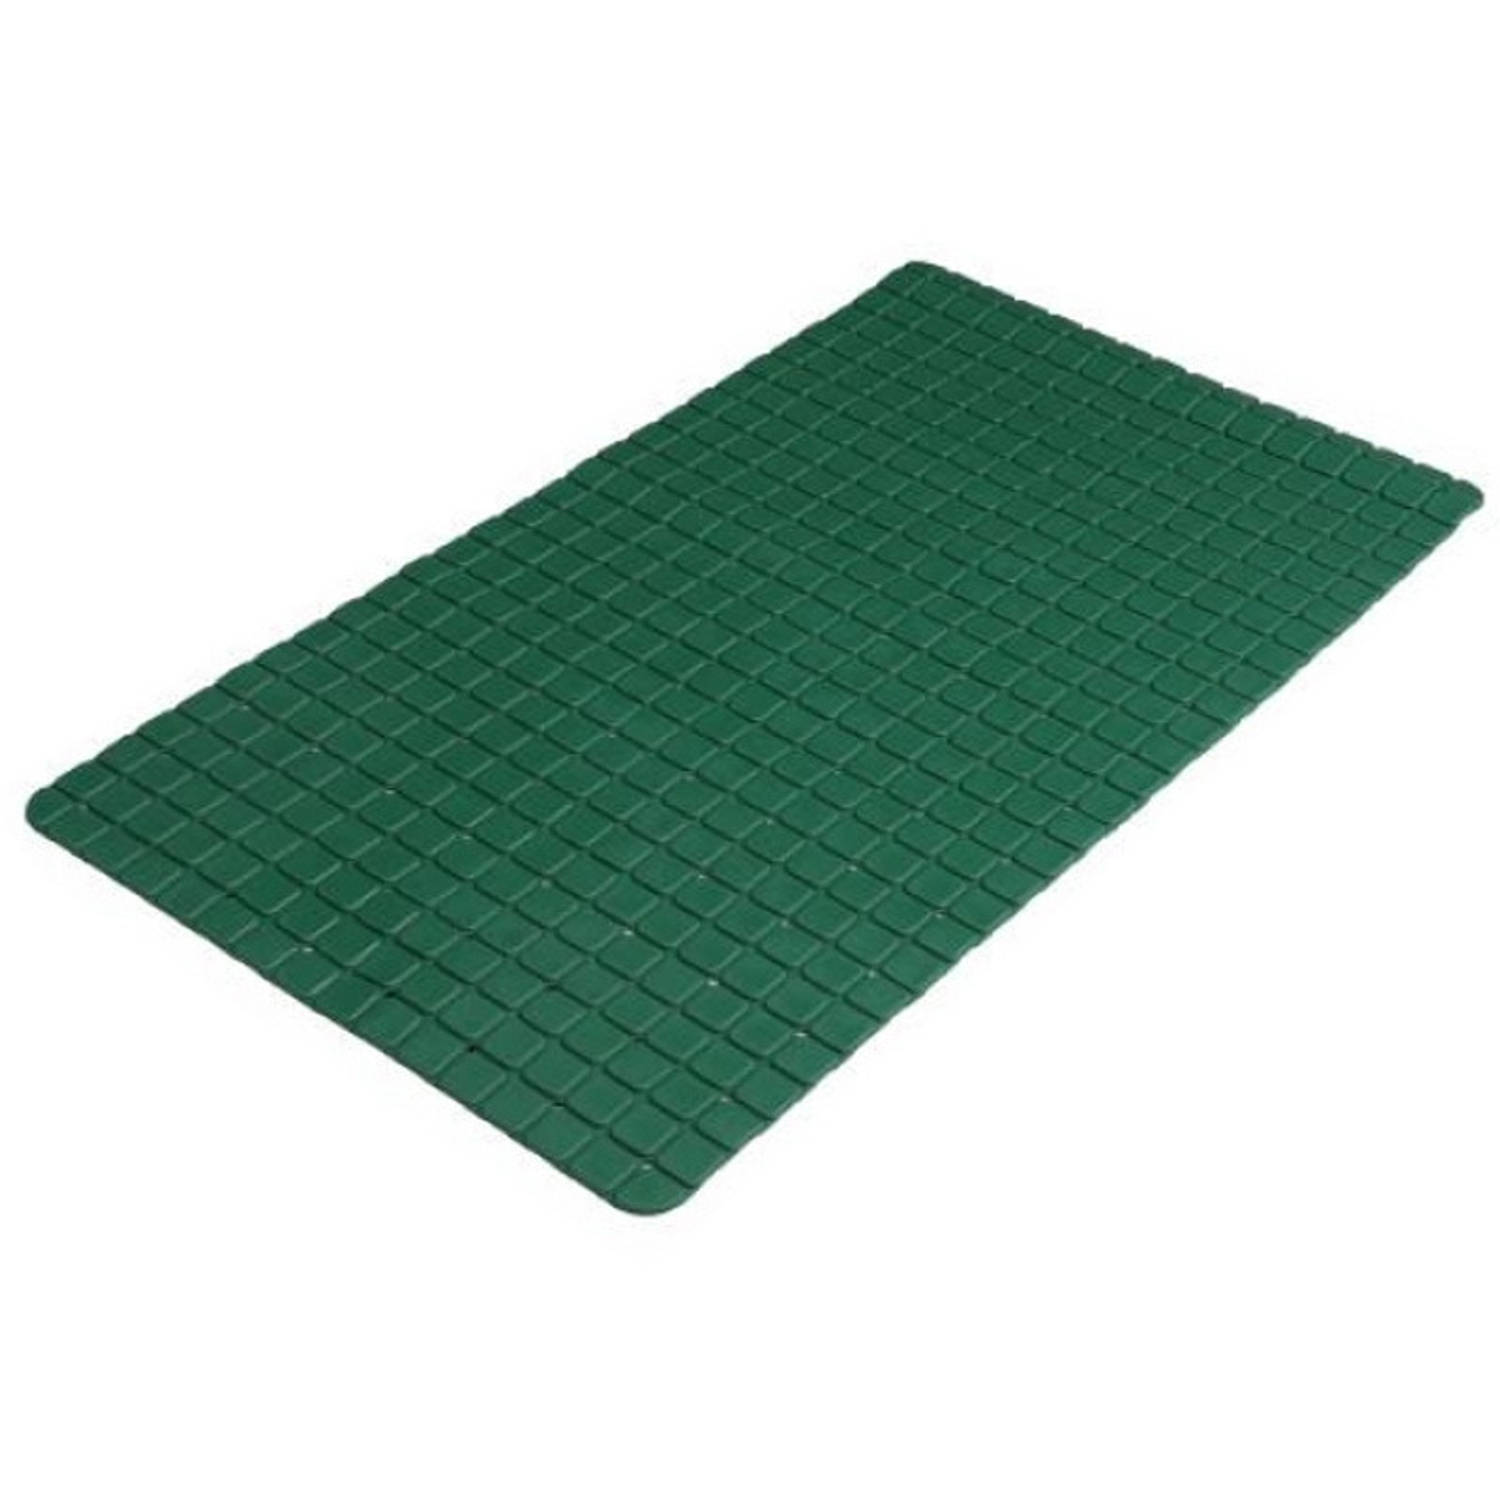 Urban Living Badkamer-douche anti slip mat rubber voor op de vloer donkergroen 39 x 69 cm Badmatjes